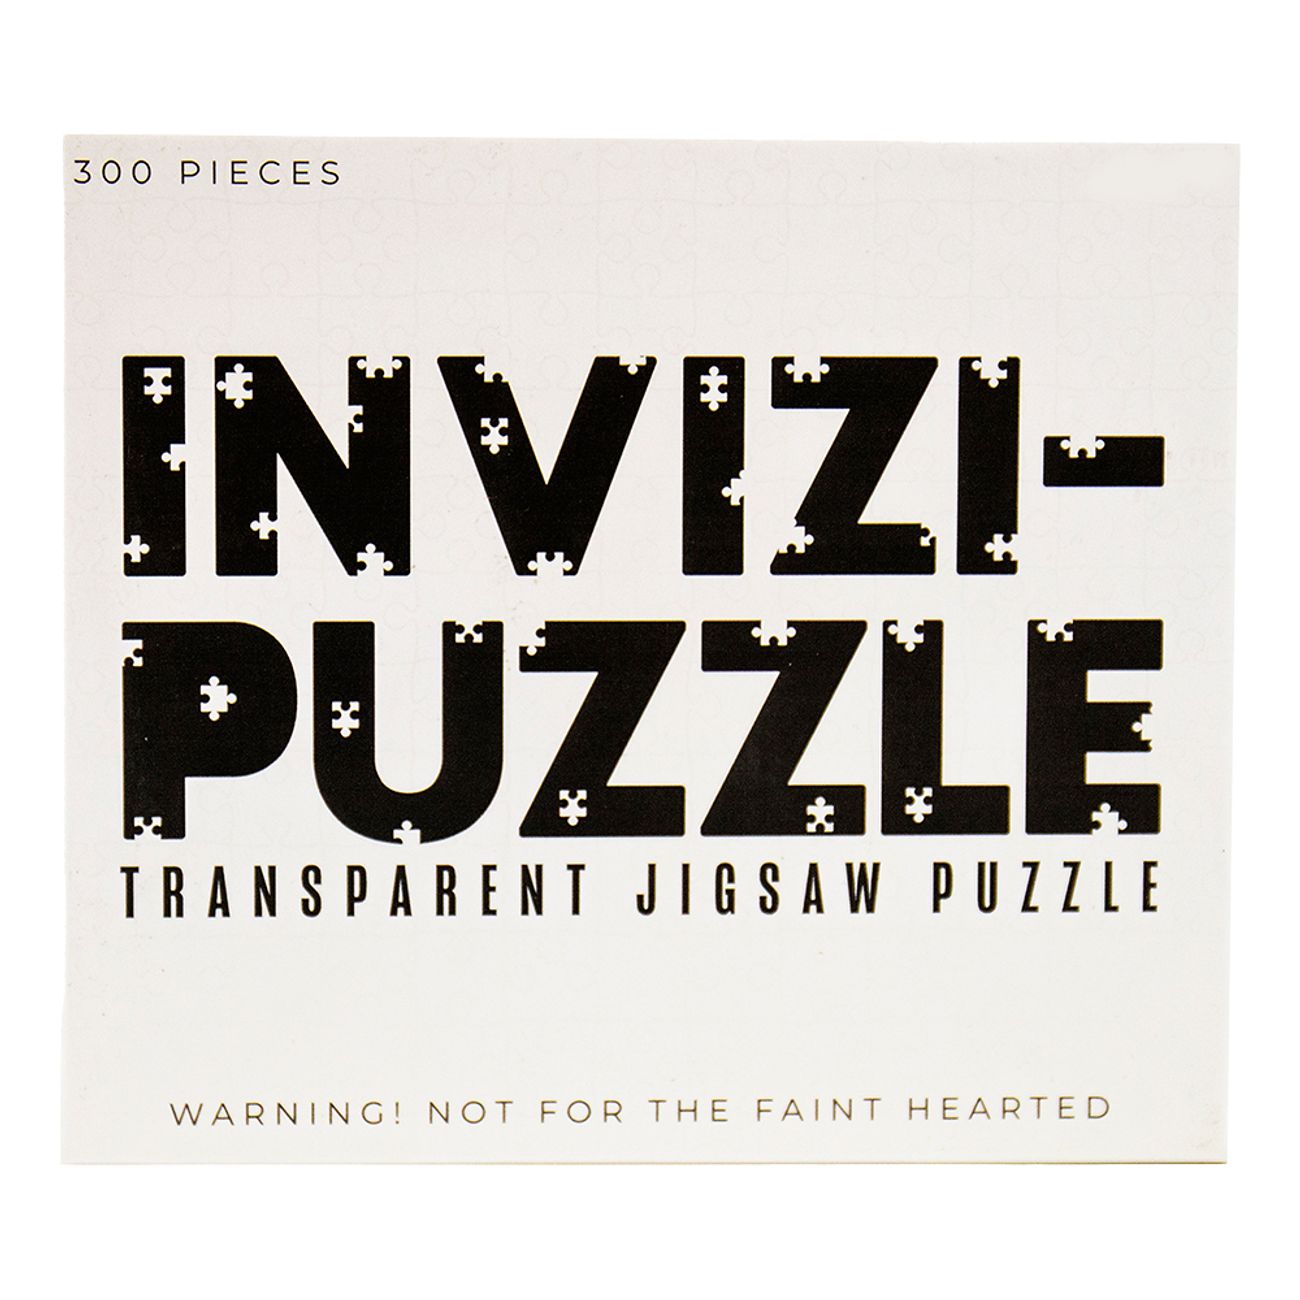 jigsaw-pussel-transparent-91940-1